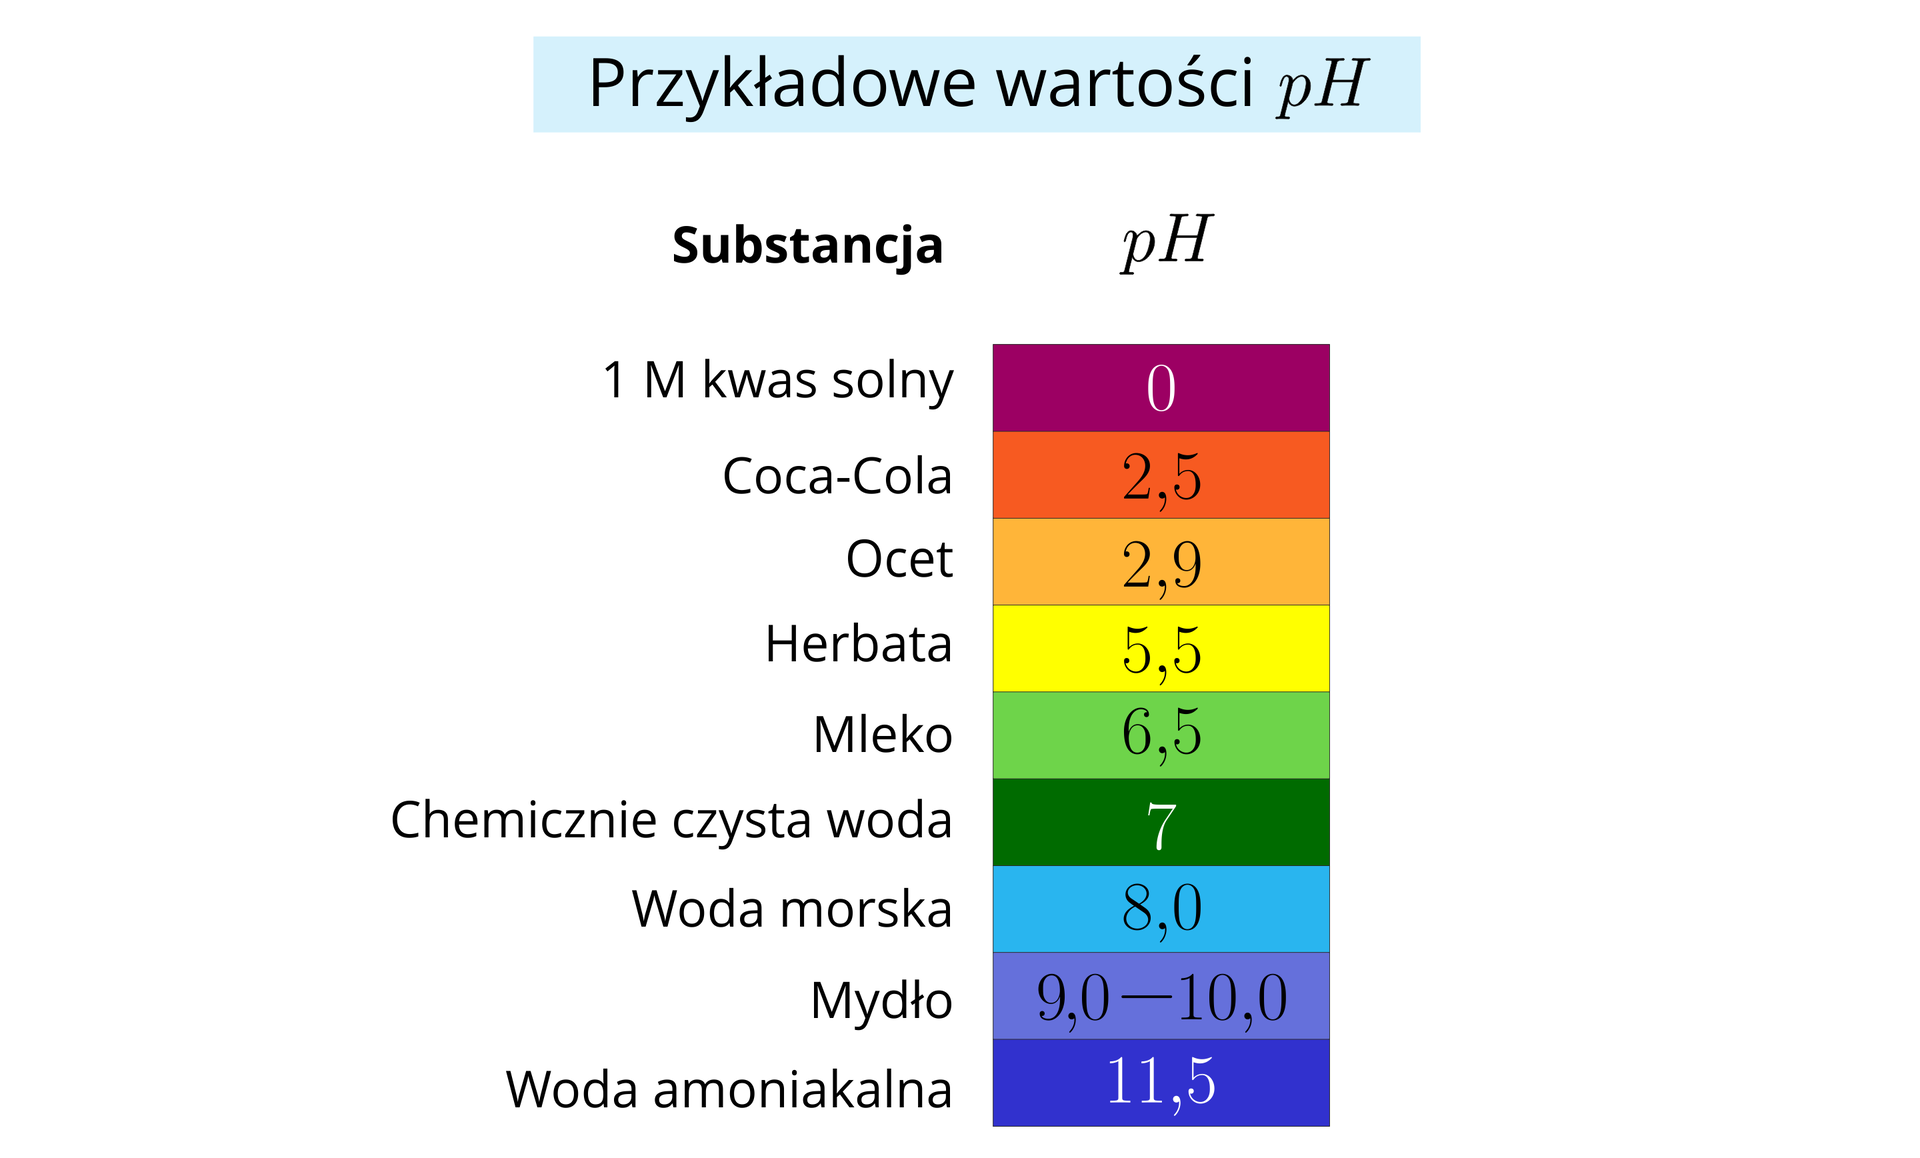 Ilustracja zatytułowana jest „Przykładowe wartości pH”. Poniżej znajdują się dwie kolumny. Kolumna lewa ma nagłówek Substancja, kolumna prawa ma nagłówek pH, a w niej zapisane są wartości pH na tle w takim kolorze, jaki przybiera papierek lakmusowy przy badaniu pH danej substancji. Podamy teraz zaprezentowane wartości pH dla wymienionych substancji. 1. Jednomolowy kwas solny – pH równe 0, kolor czerwony, 2. Coca-cola – pH równe 2,5, kolor pomarańczowy 3. Ocet, – pH równe 2,9 kolor jasnopomarańczowy, 4. Herbata – pH równe 5,4, kolor żółty, 5. Mleko – pH równe 6,5, kolor jasnozielony, 6. Chemicznie czysta woda – pH równe 7, kolor zielony, 7. Woda morska – pH równe 8, kolor niebieski, 8. Mydło – pH w zakresie od dziewięciu do dziesięciu, kolor ciemnoniebieski, 9. Woda amoniakalna – pH równe 11,5, kolor granatowy.